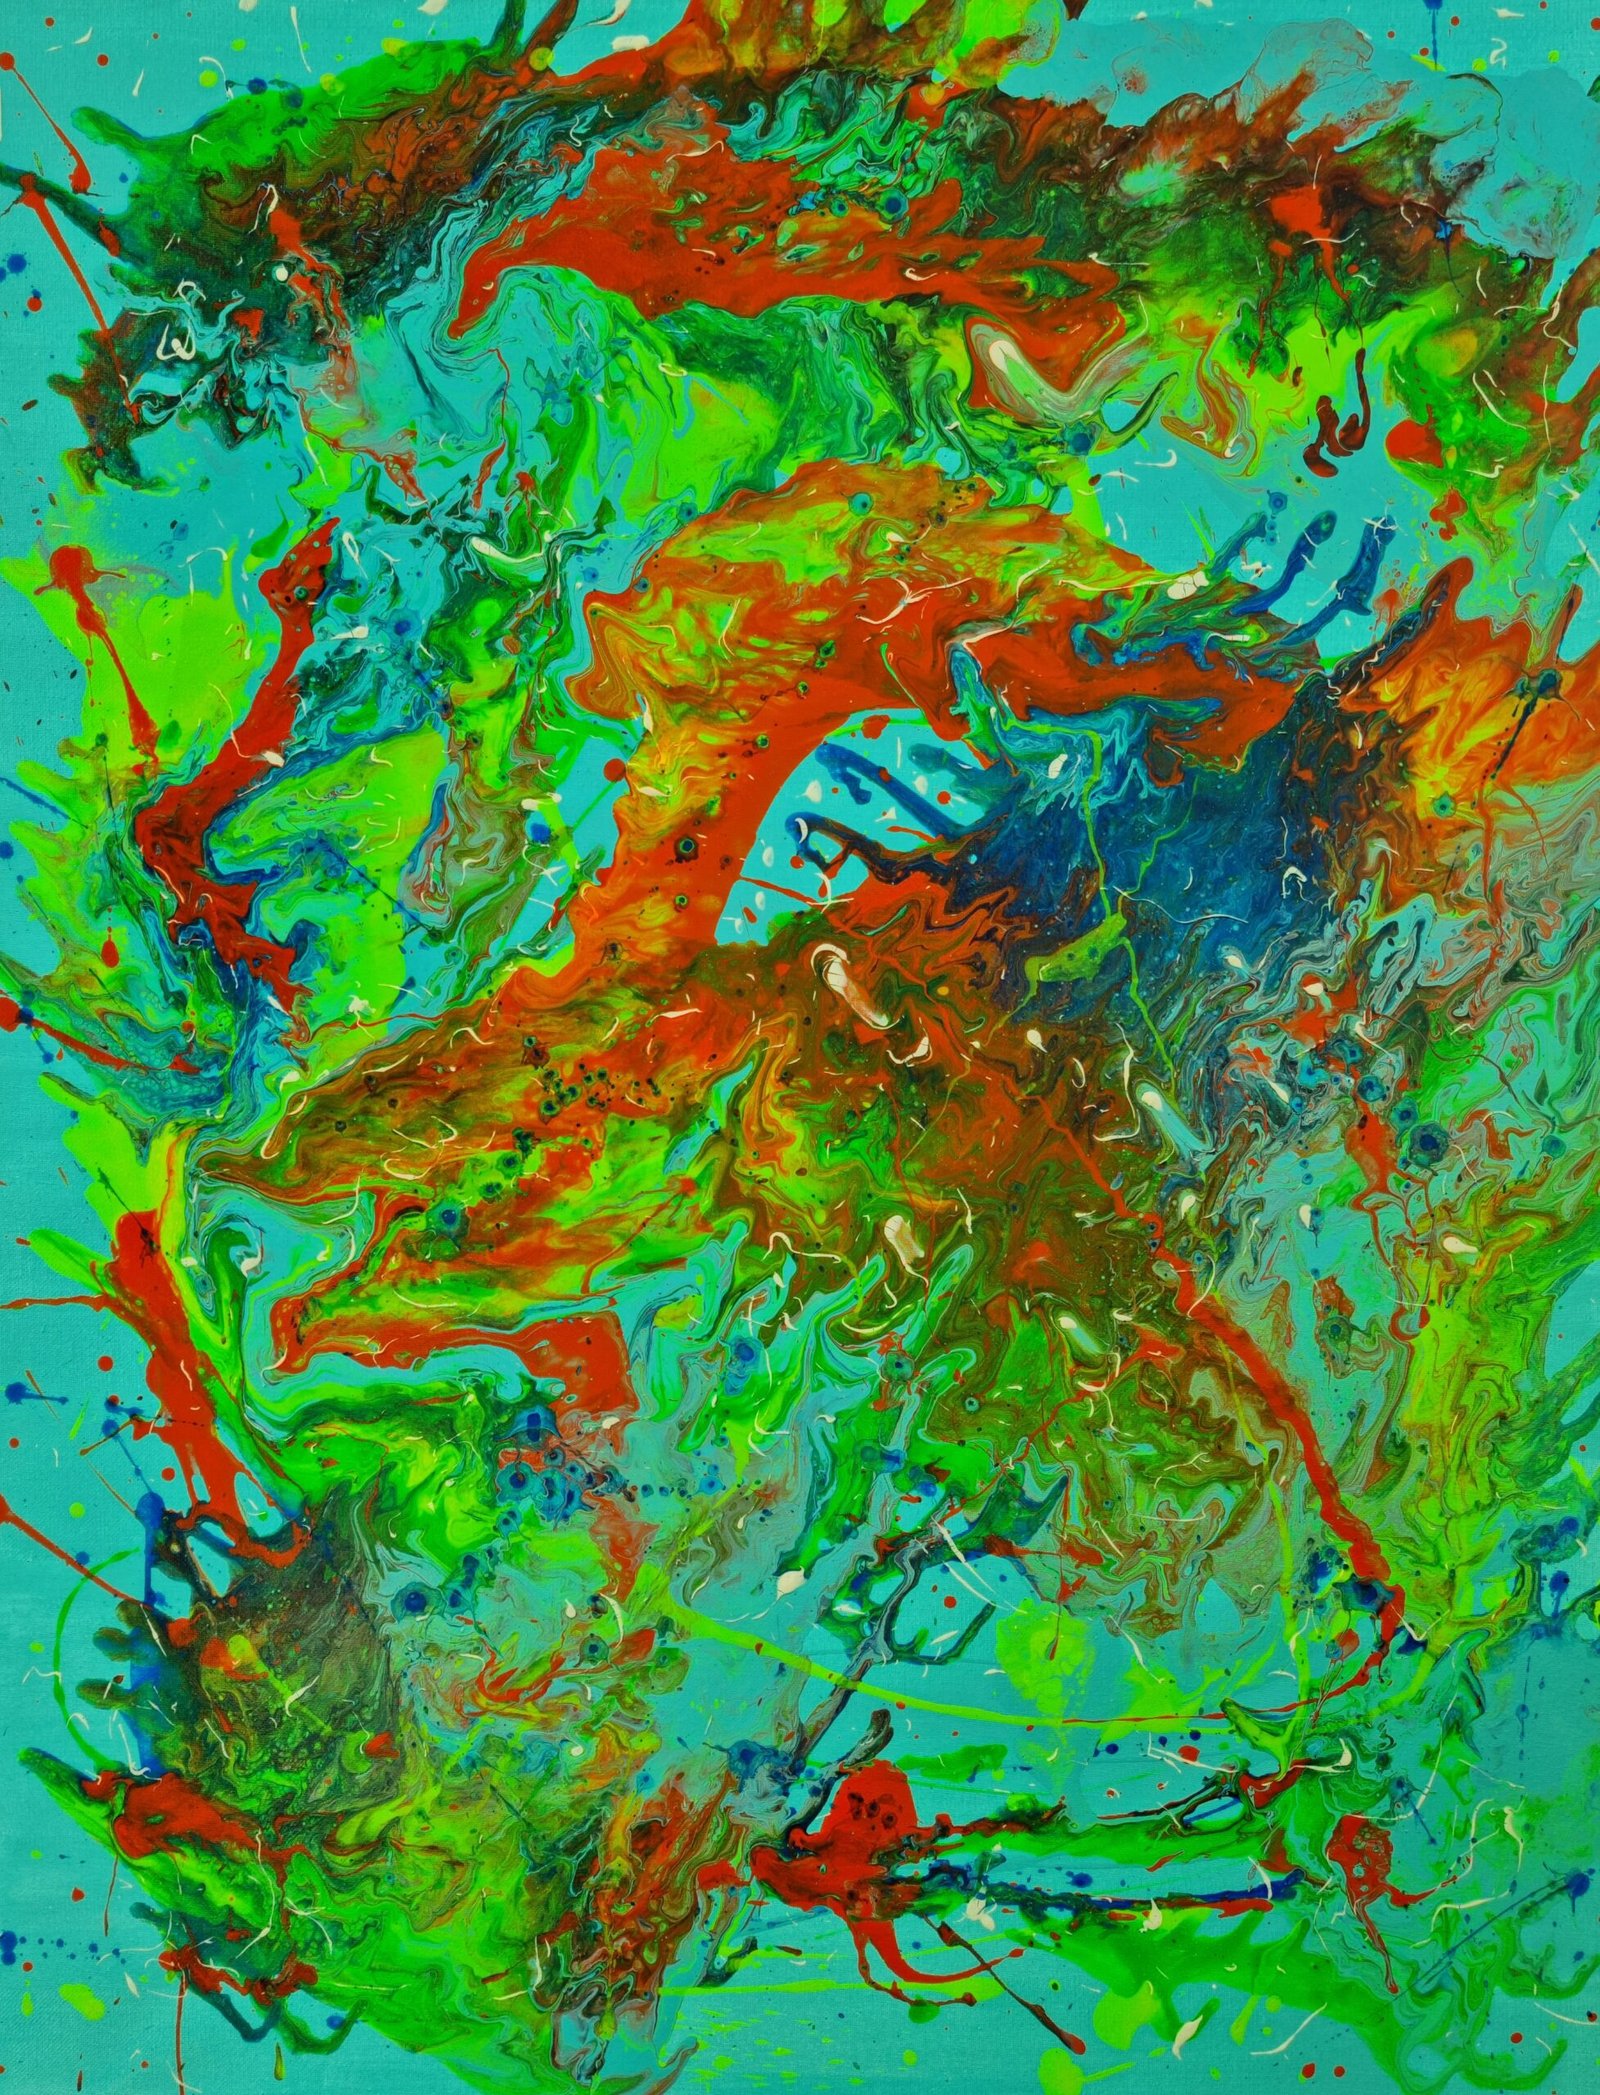 Cuadro Néctar dlopezartist Obra abstracta en la galería de arte D. López